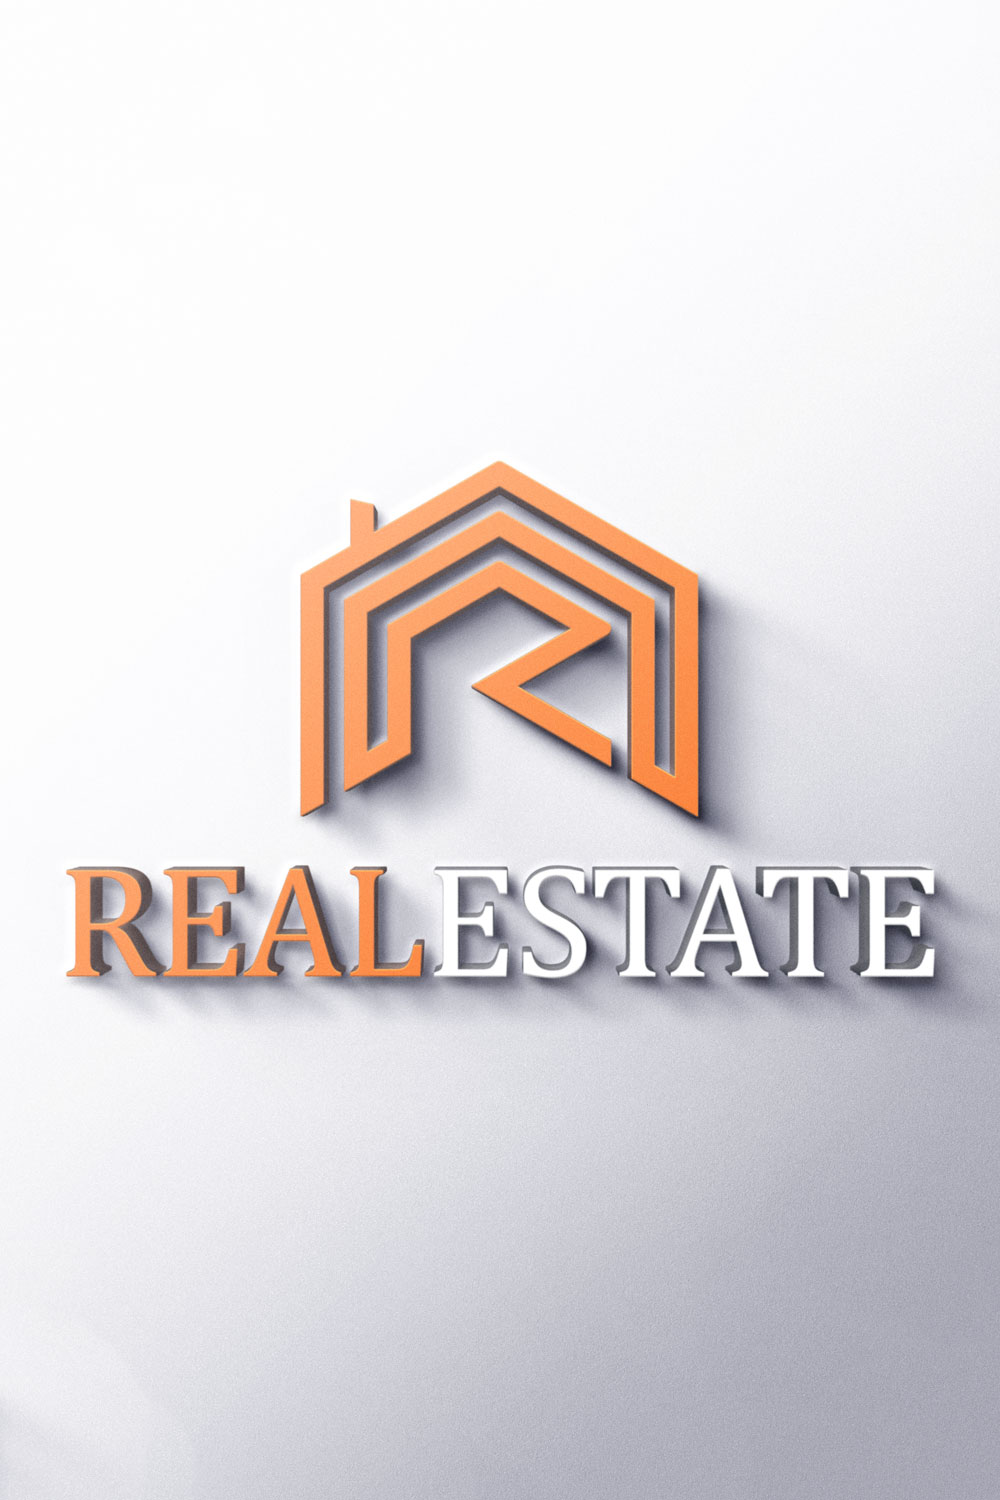 Home Real Estate Logo Grey Design pinterest image.